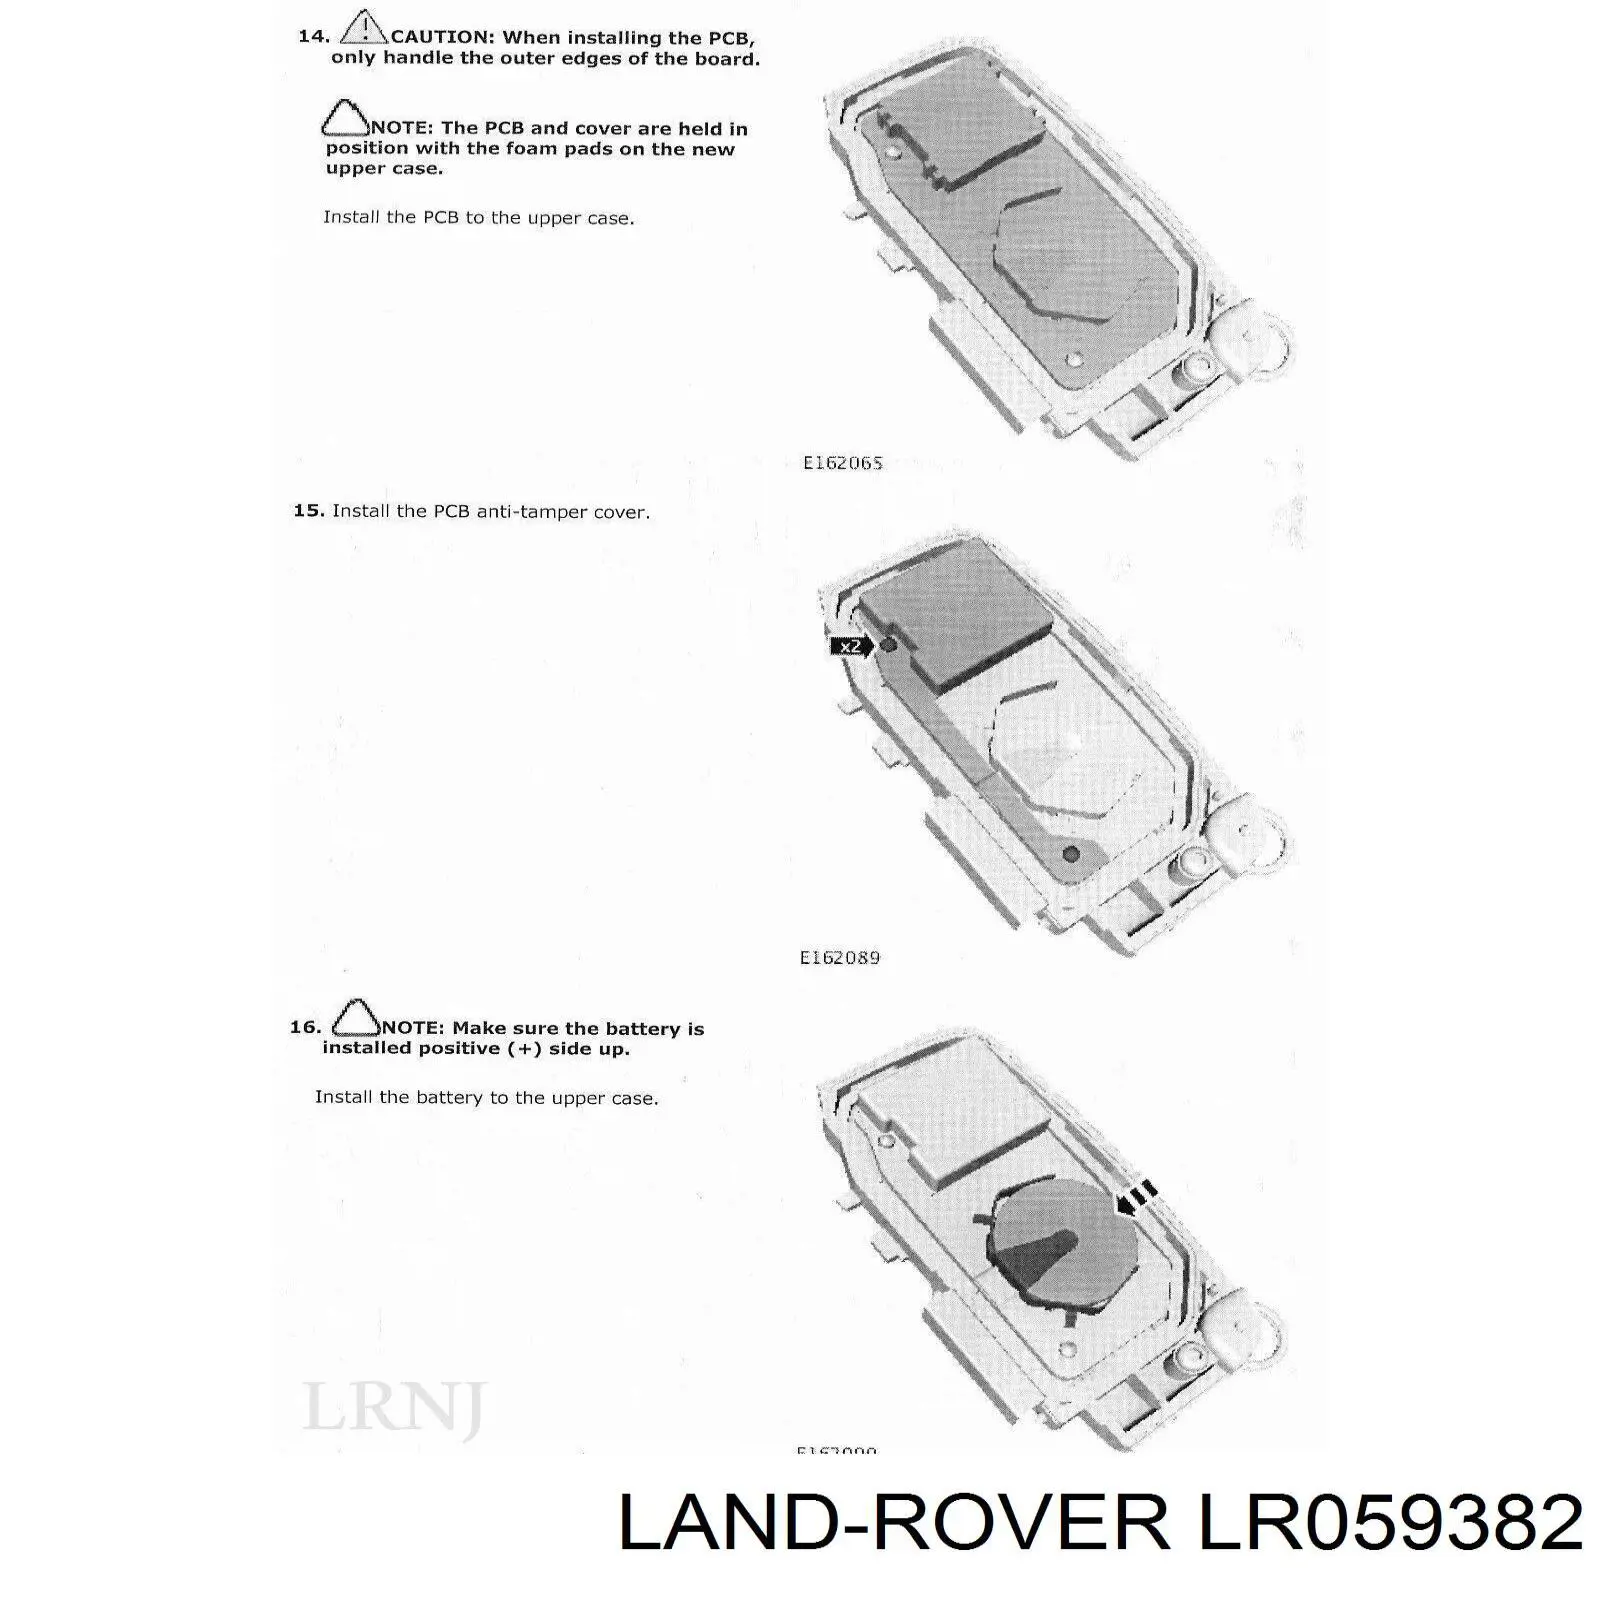 Llavero Crontol De Alarma para Land Rover Freelander (L359)